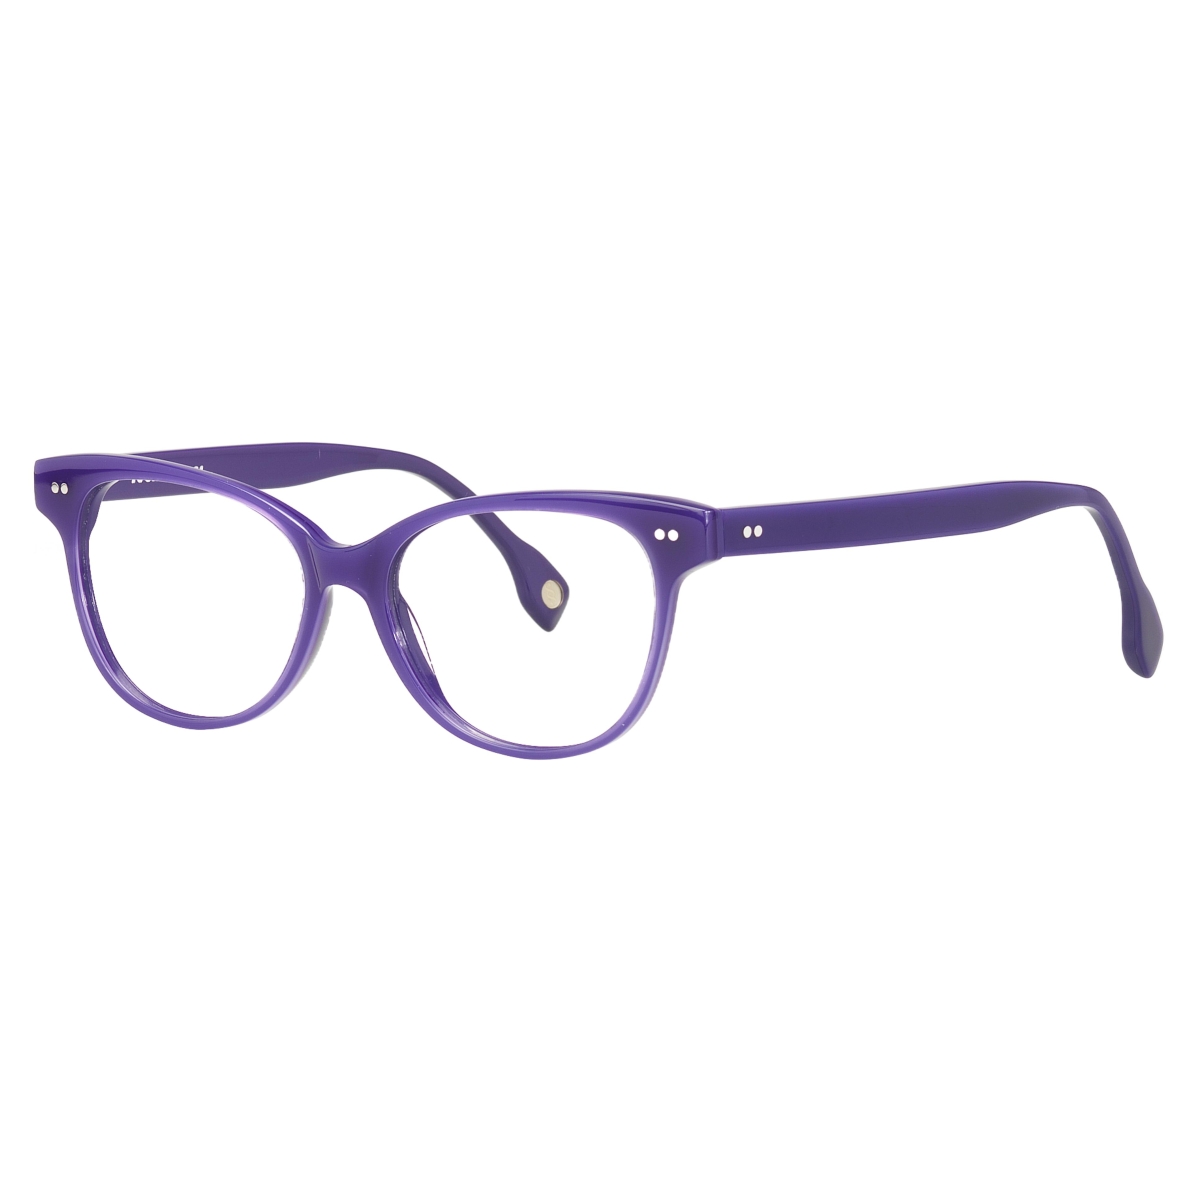 Sugar Specs - The Head Turner 04 Purple Blue